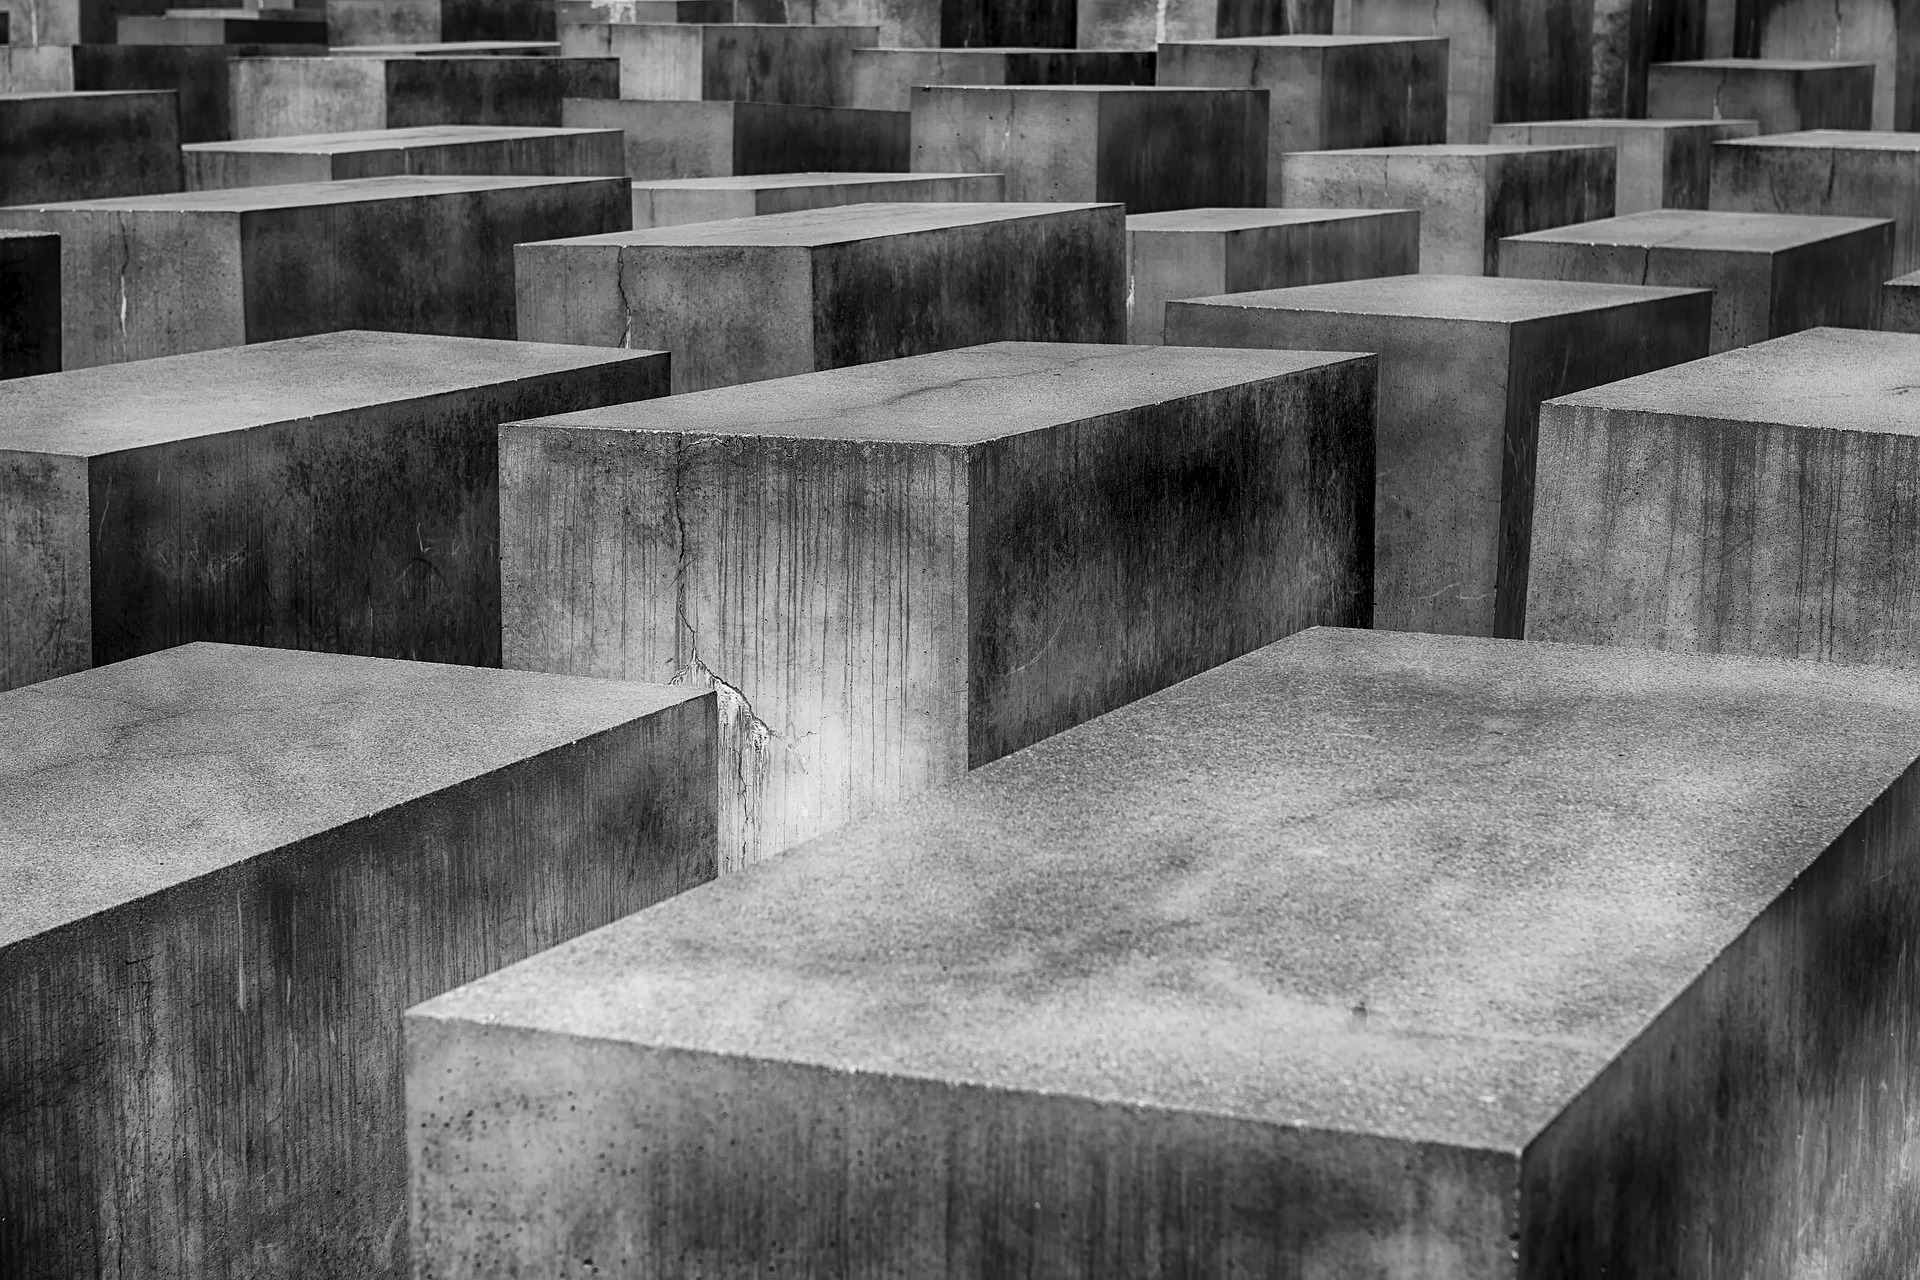 Bildausschnitt aus dem Denkmal für die ermordeten Juden Europas | pixabay